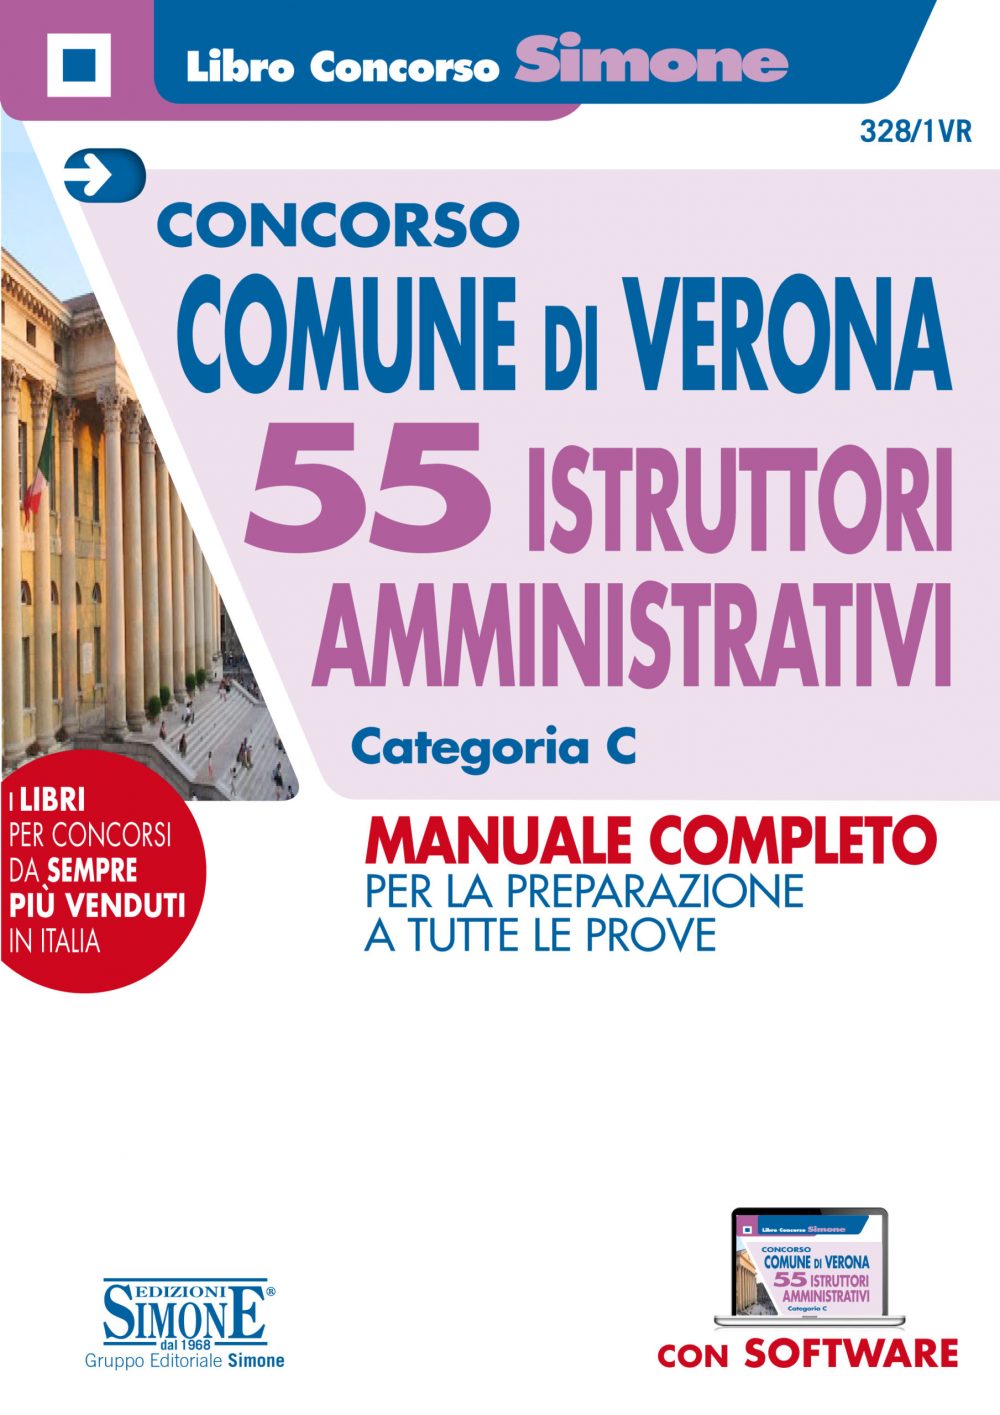 Concorso Comune di Verona - 55 Istruttori Amministrativi - Categoria C - Manuale Completo - 328/1VR